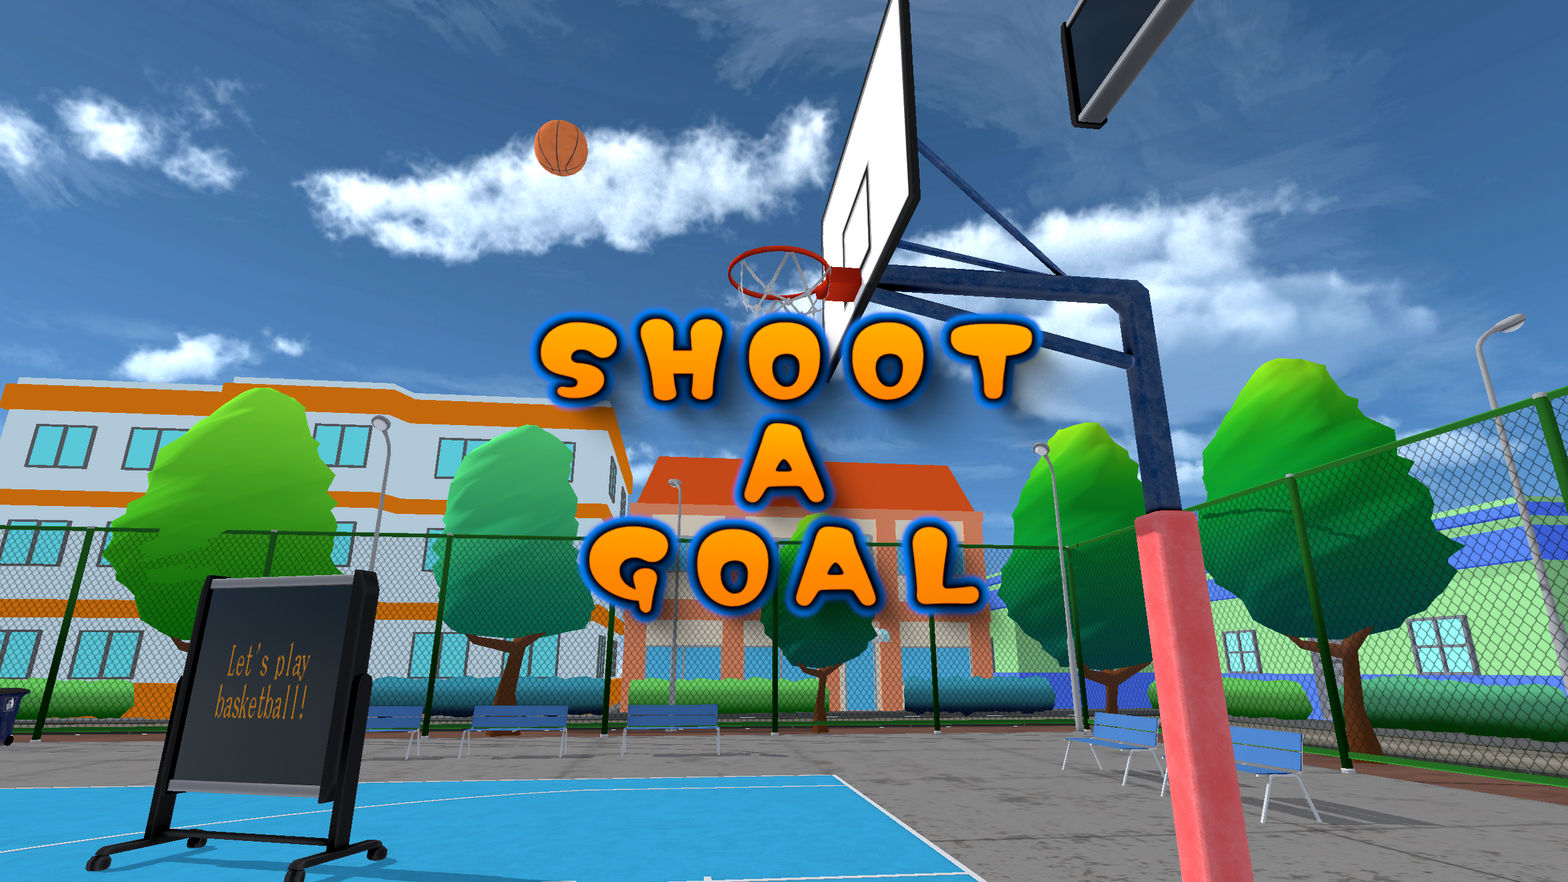 Shoot A Goal